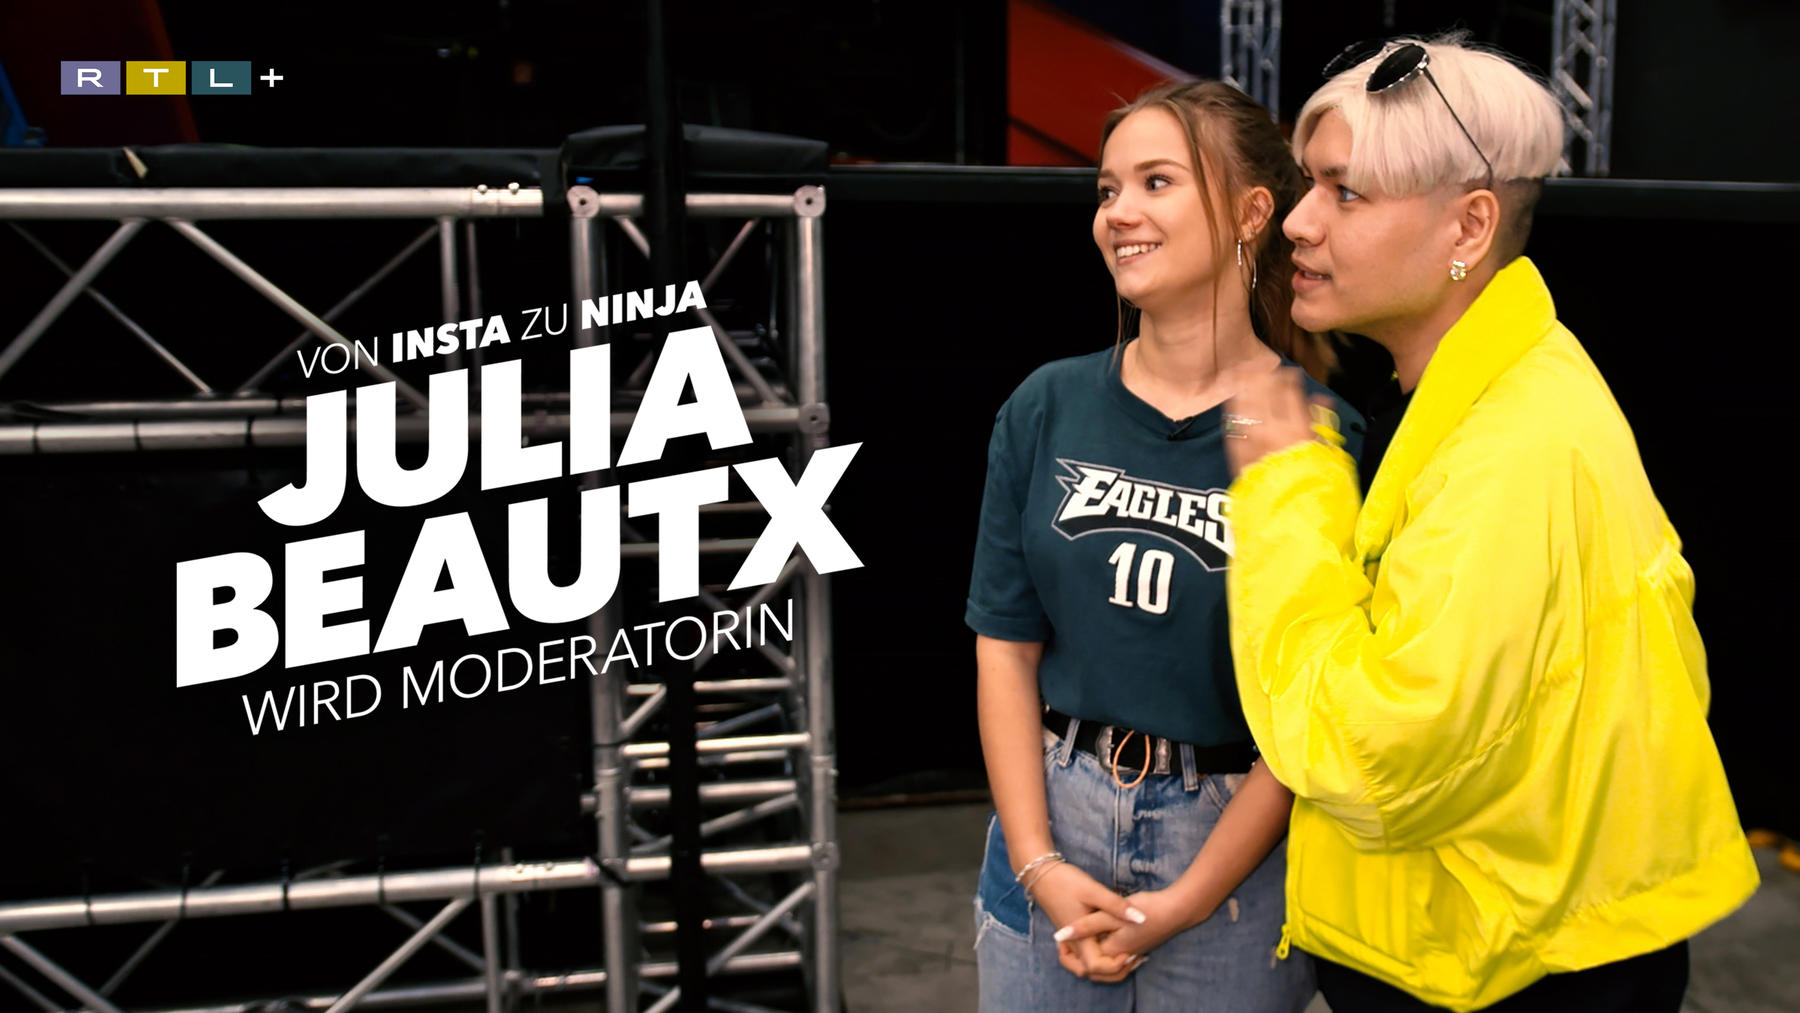 Von Insta zu Ninja - Julia Beautx wird Moderatorin